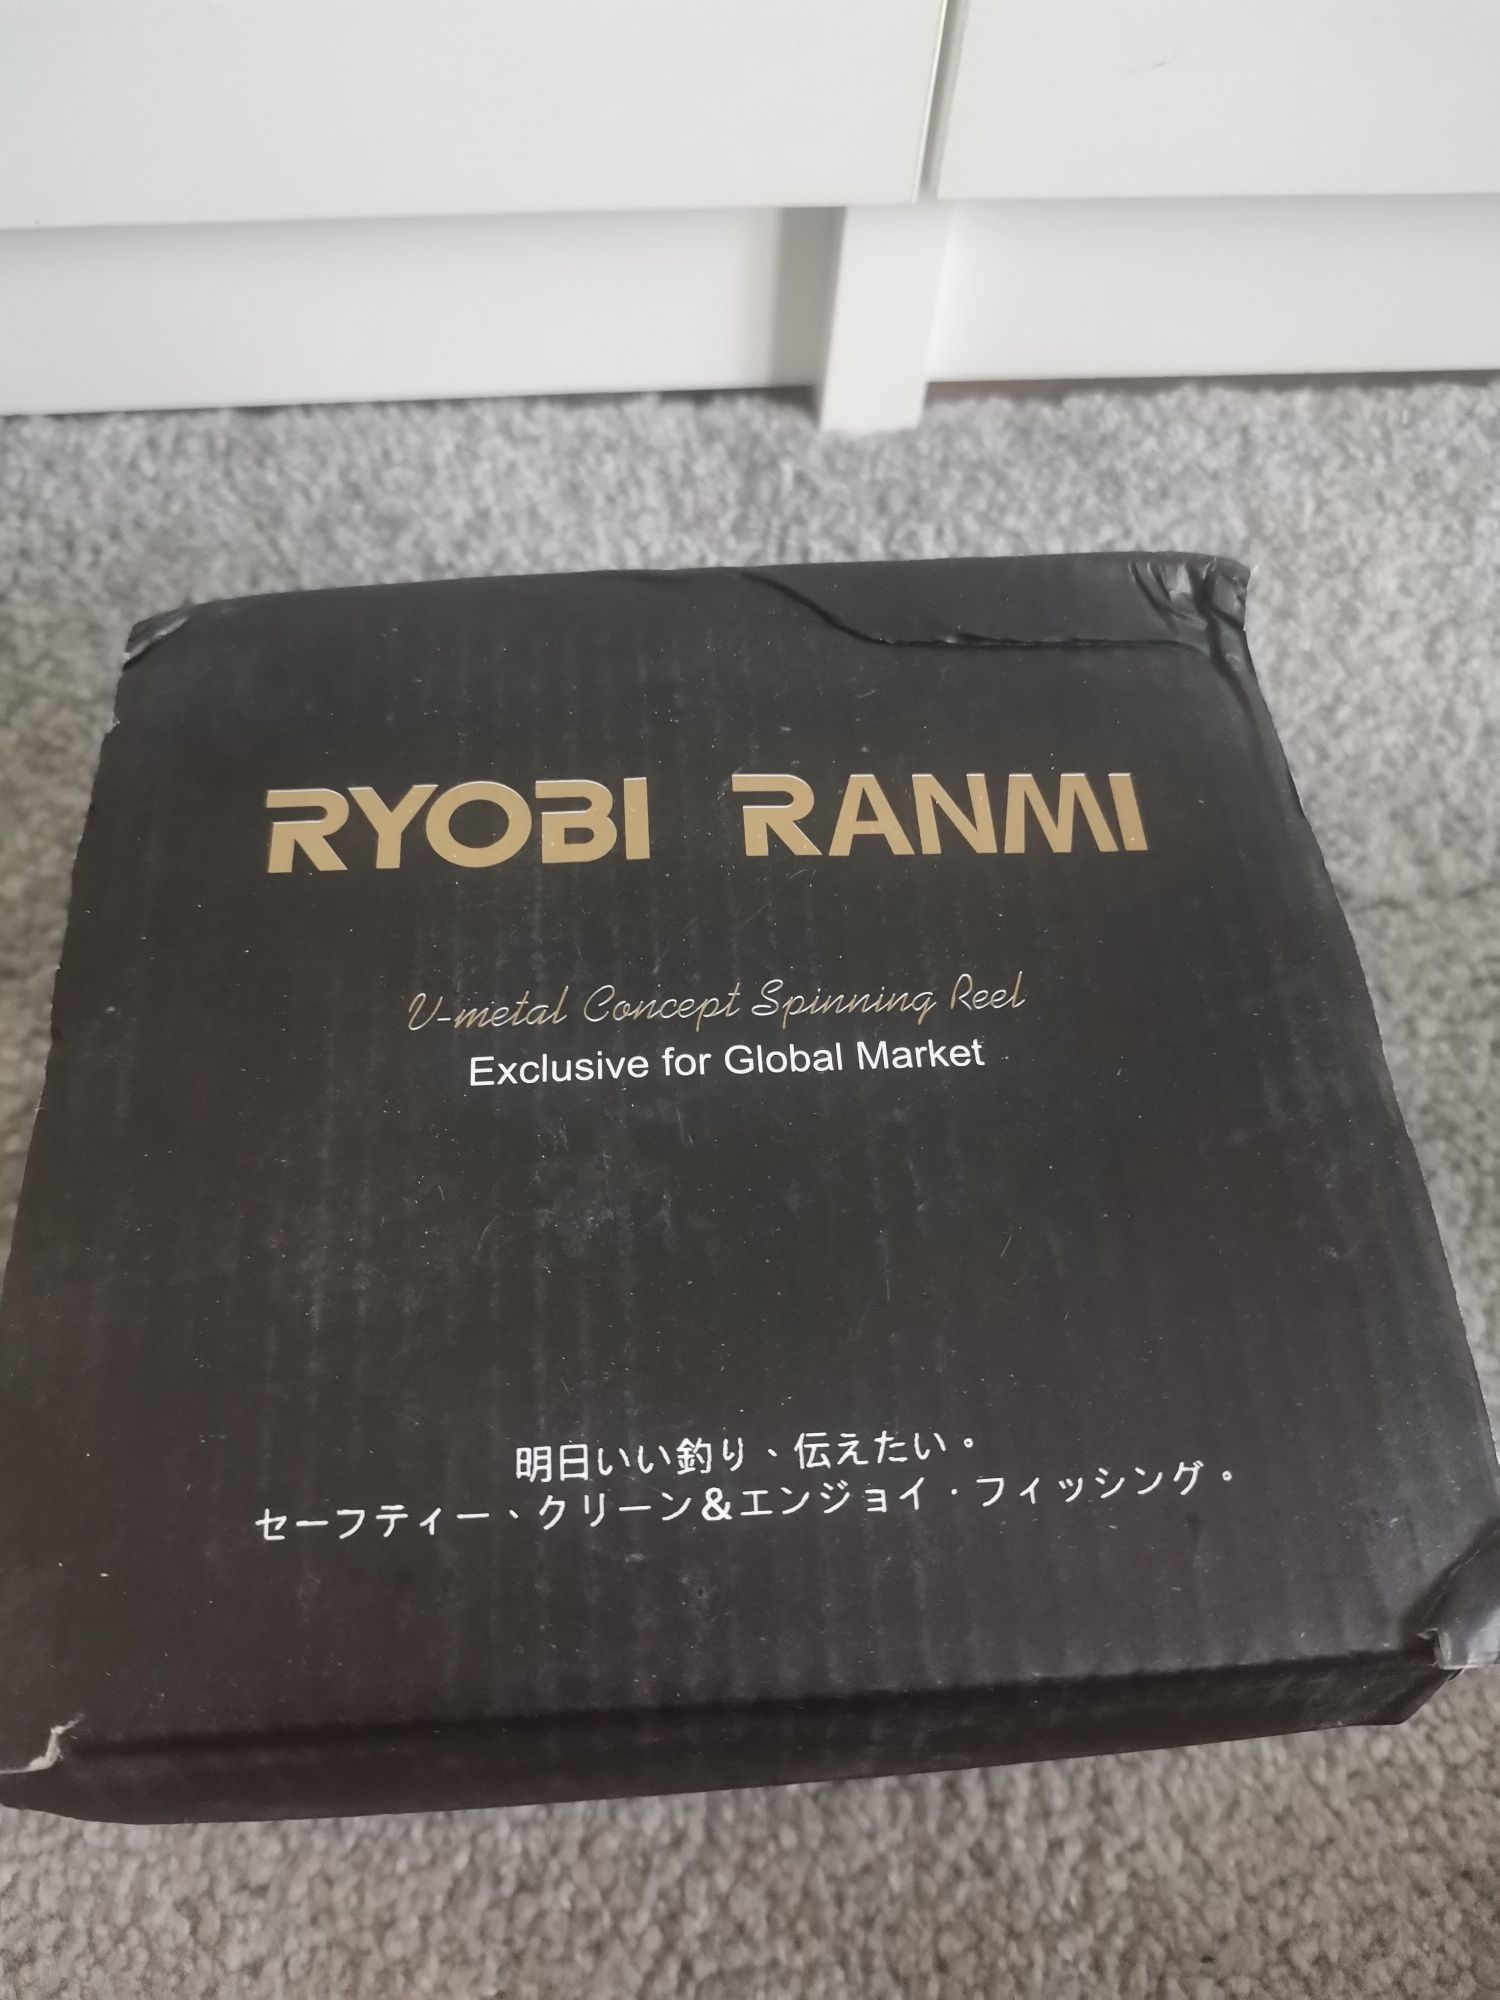 Mulineta Ryobi Ranmi 7000 Spinning nu Shimano Daiwa